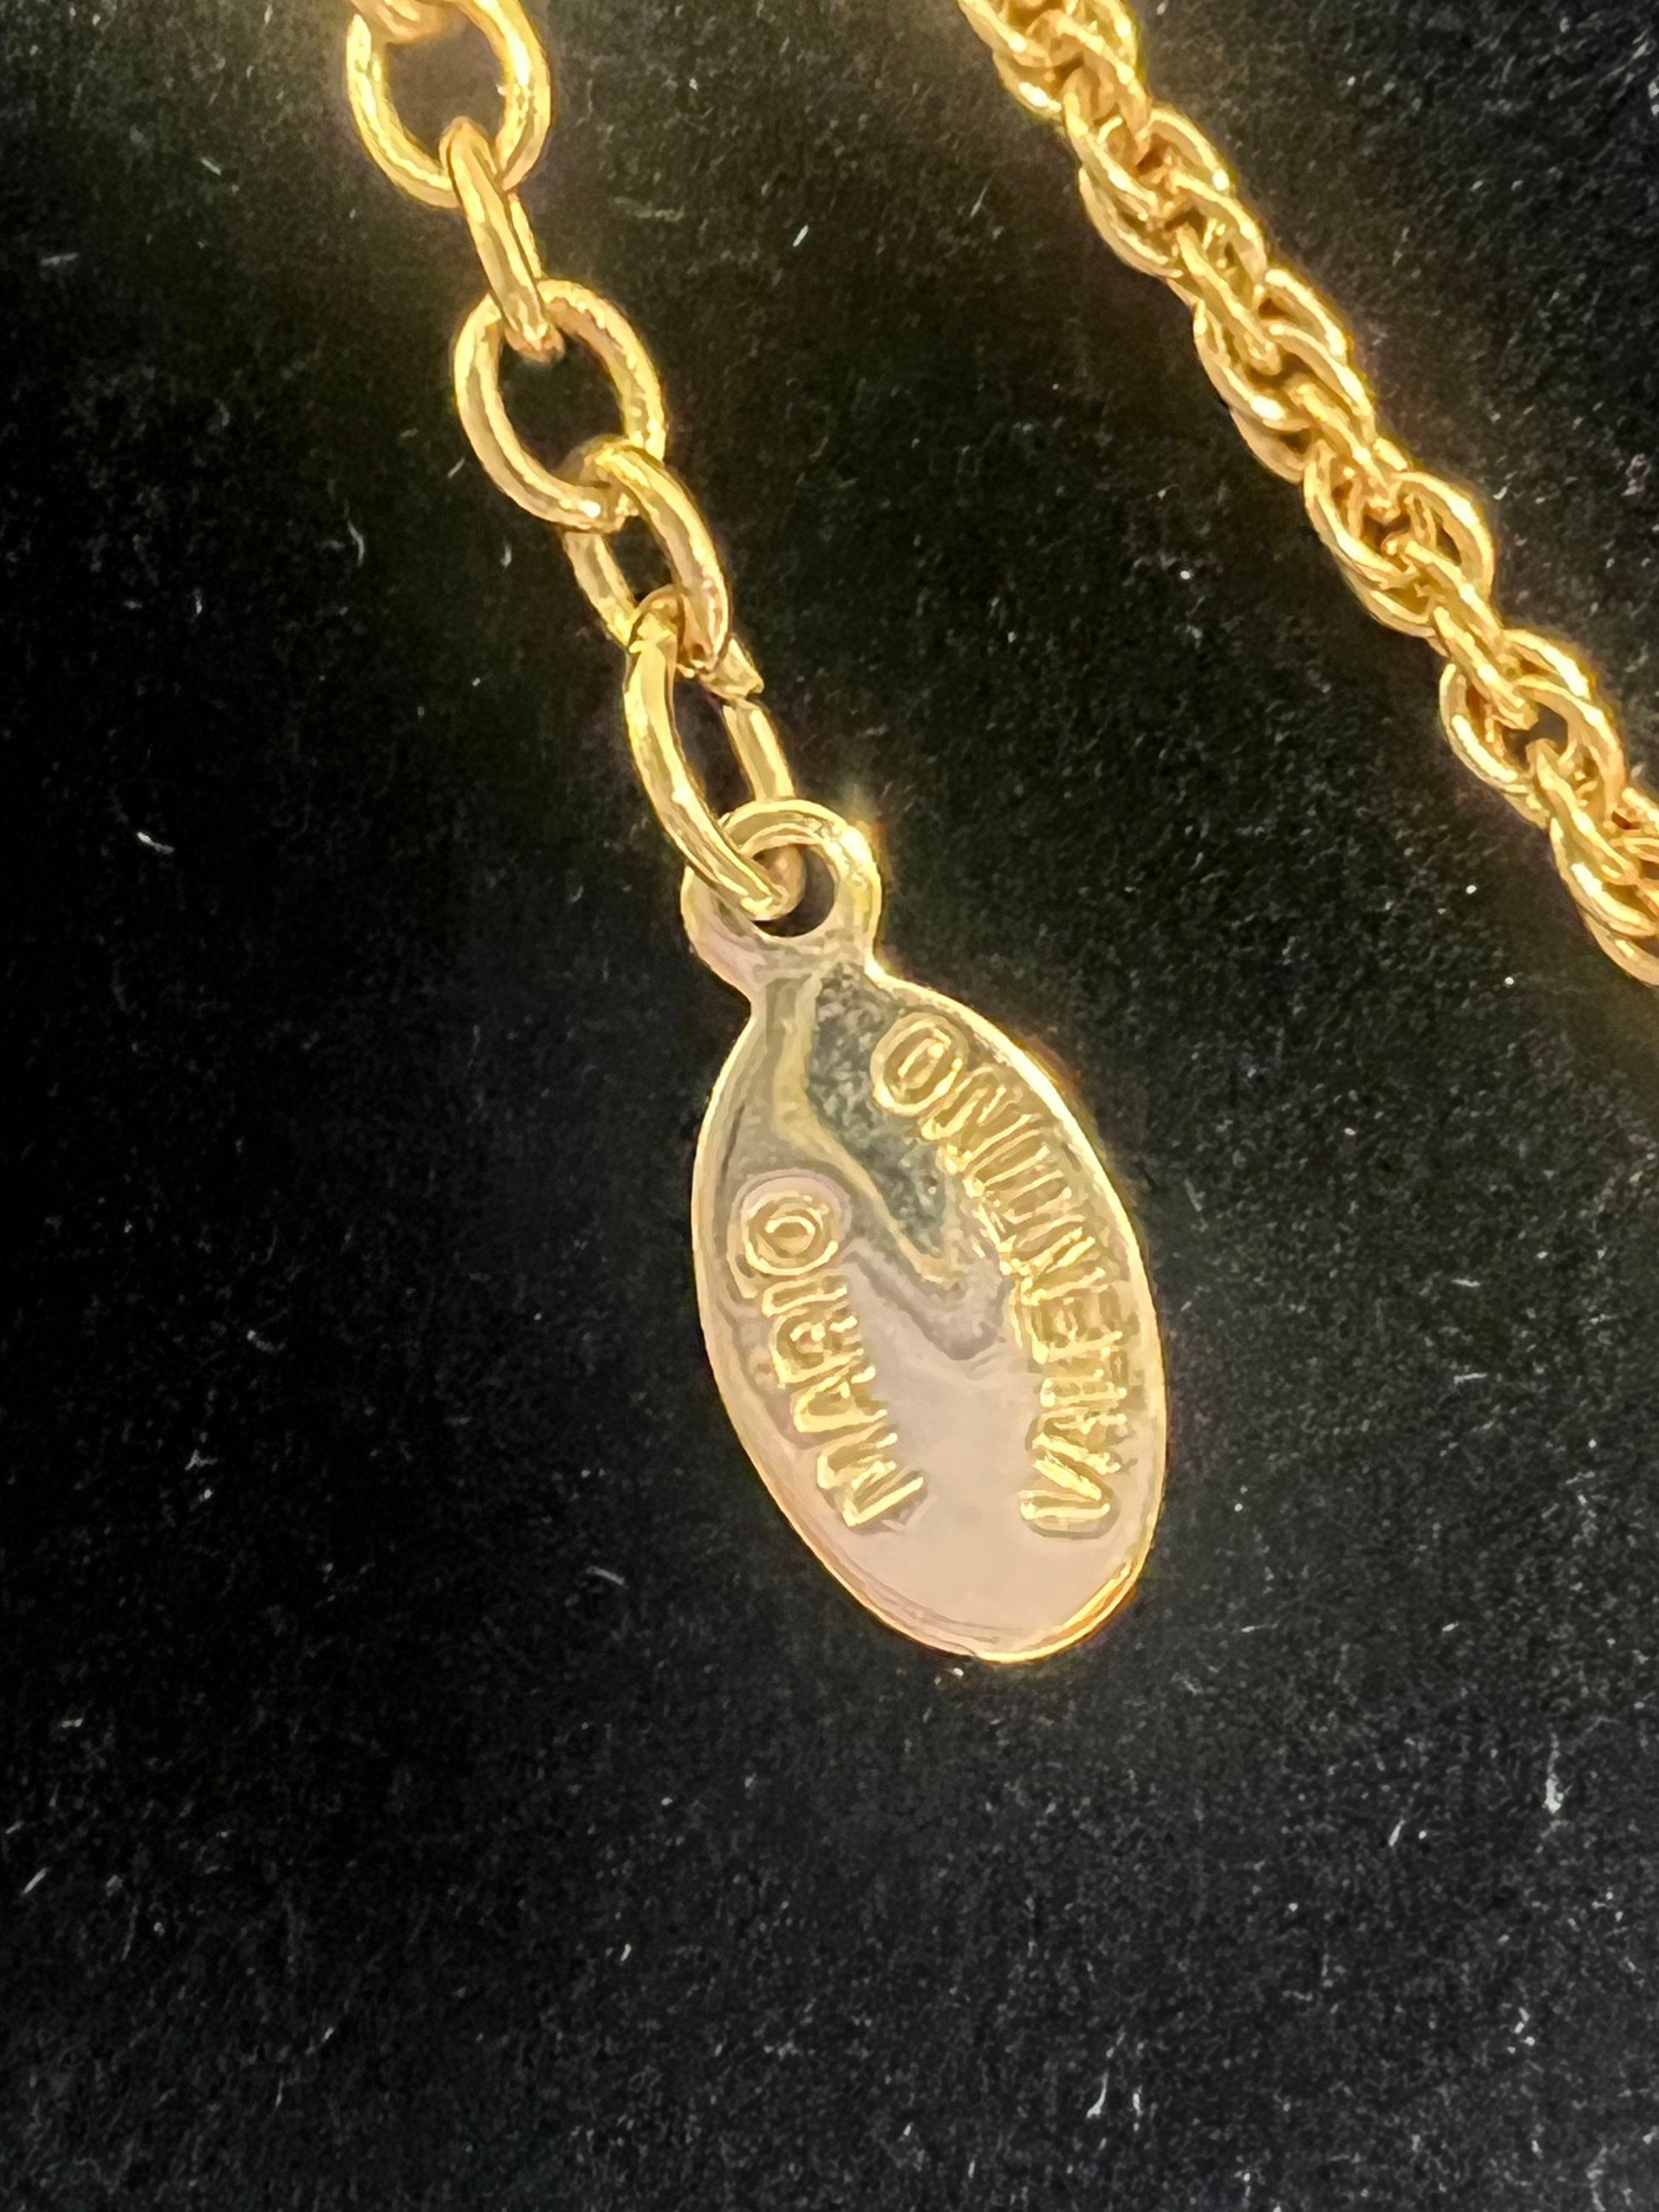 Mario Valentino Gold Toned Chain and Faux Diamond Pendant 